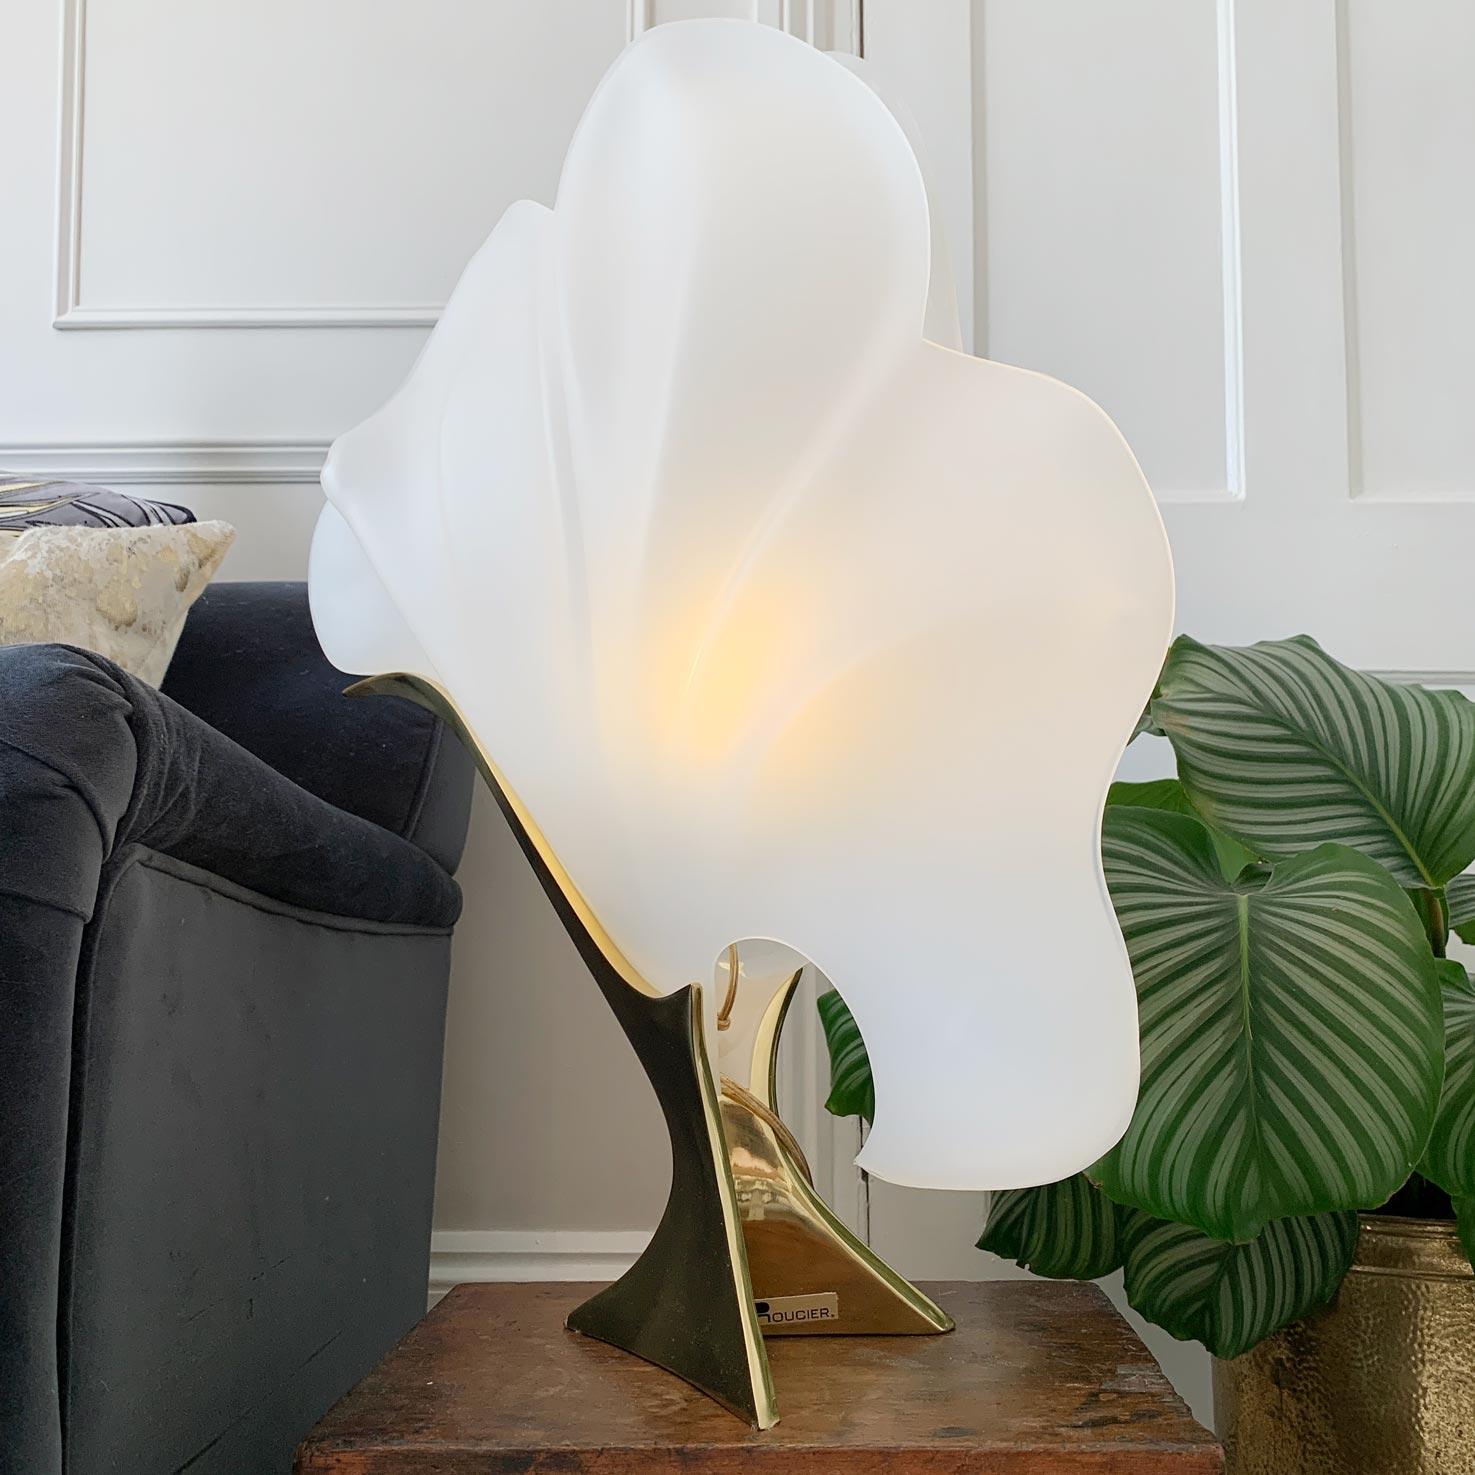 Cette lampe de table incroyablement élégante et spectaculaire est fabriquée à partir d'acrylique opalin dépoli en forme de coquillages naturalistes, eux-mêmes posés sur un pied en laiton massif.
Une lampe d'appoint impressionnante, de grande taille